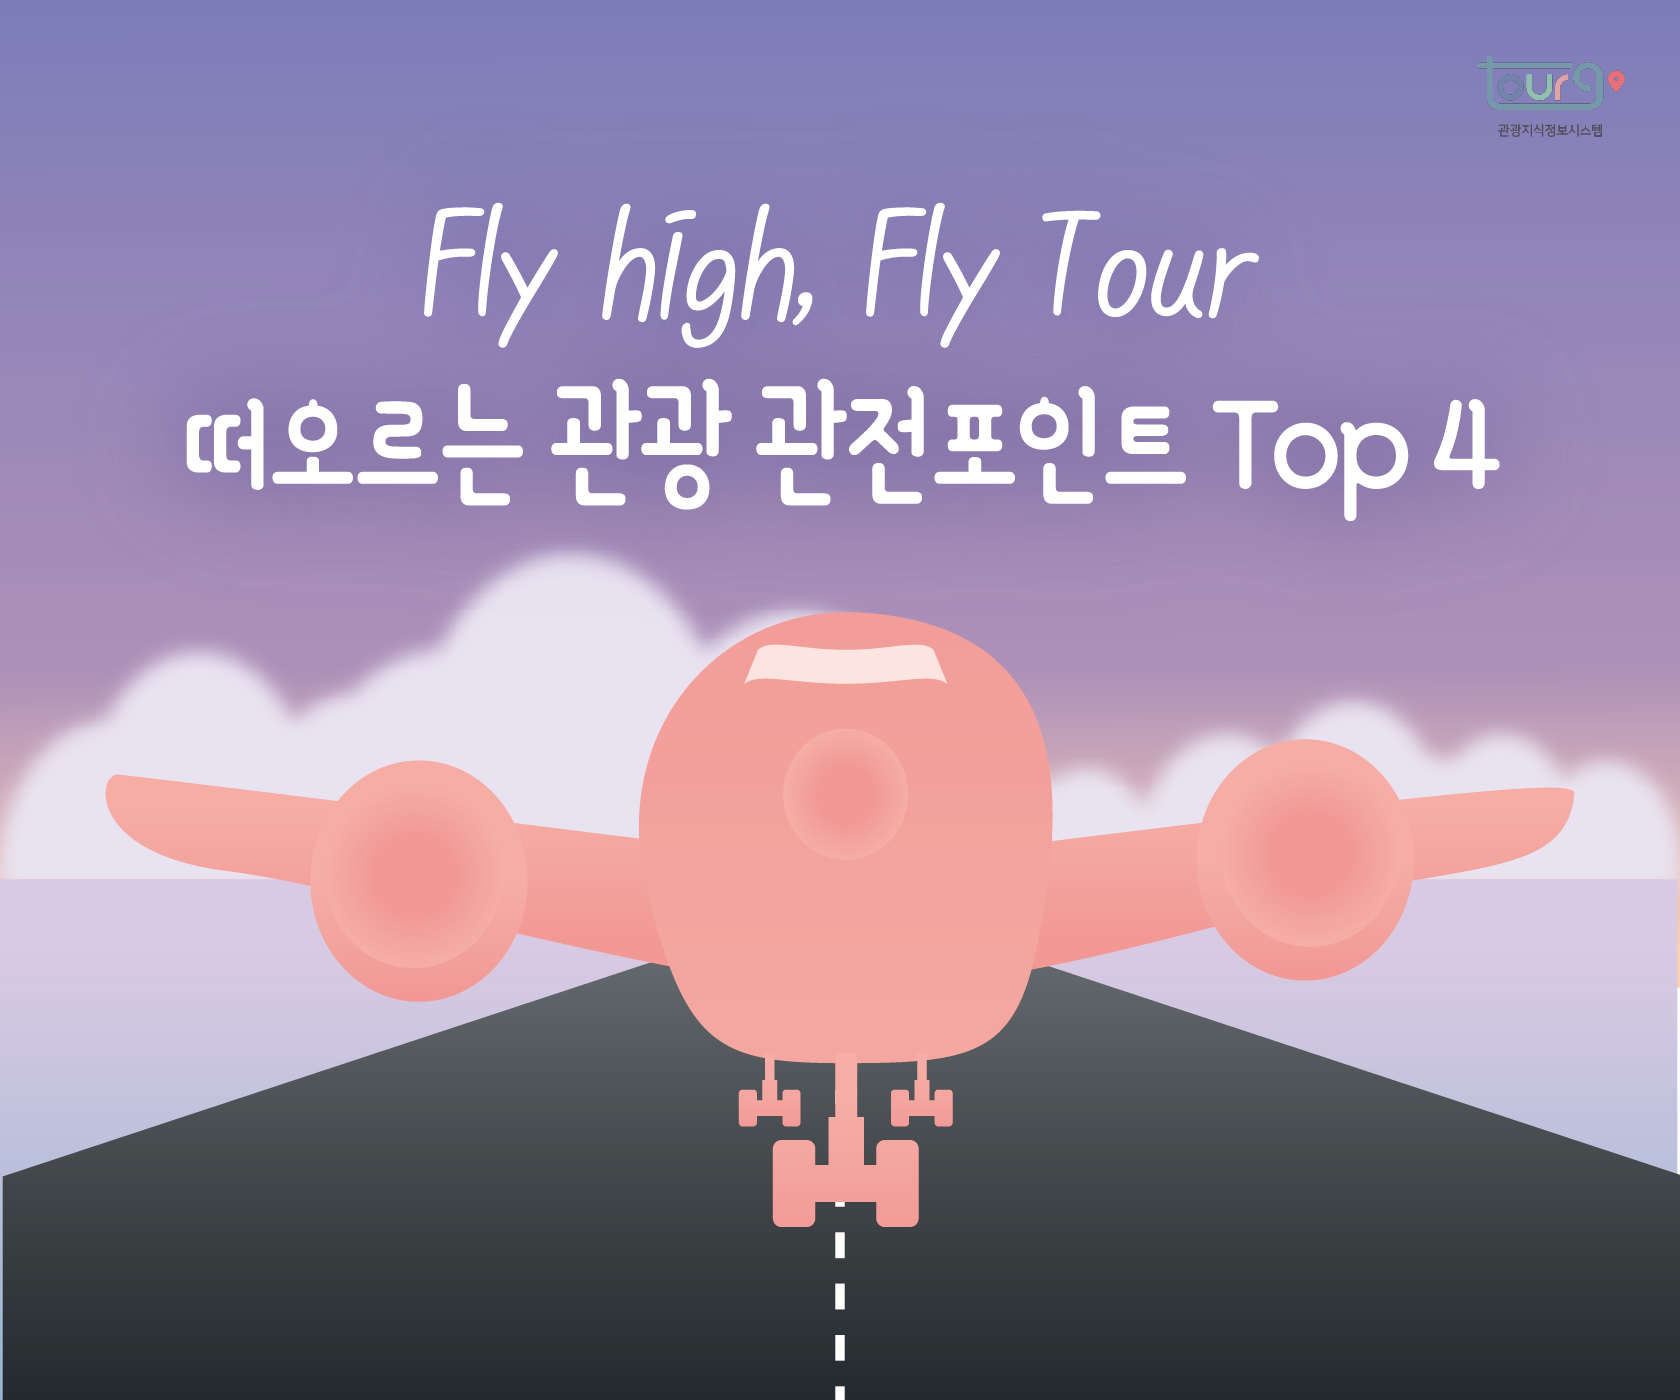 Fly high, Fly Tour 떠오르는 관광 관전포인트 Top 4 (제3회 관광통계 인포그래픽 공모전 우수상, 유자나무팀)